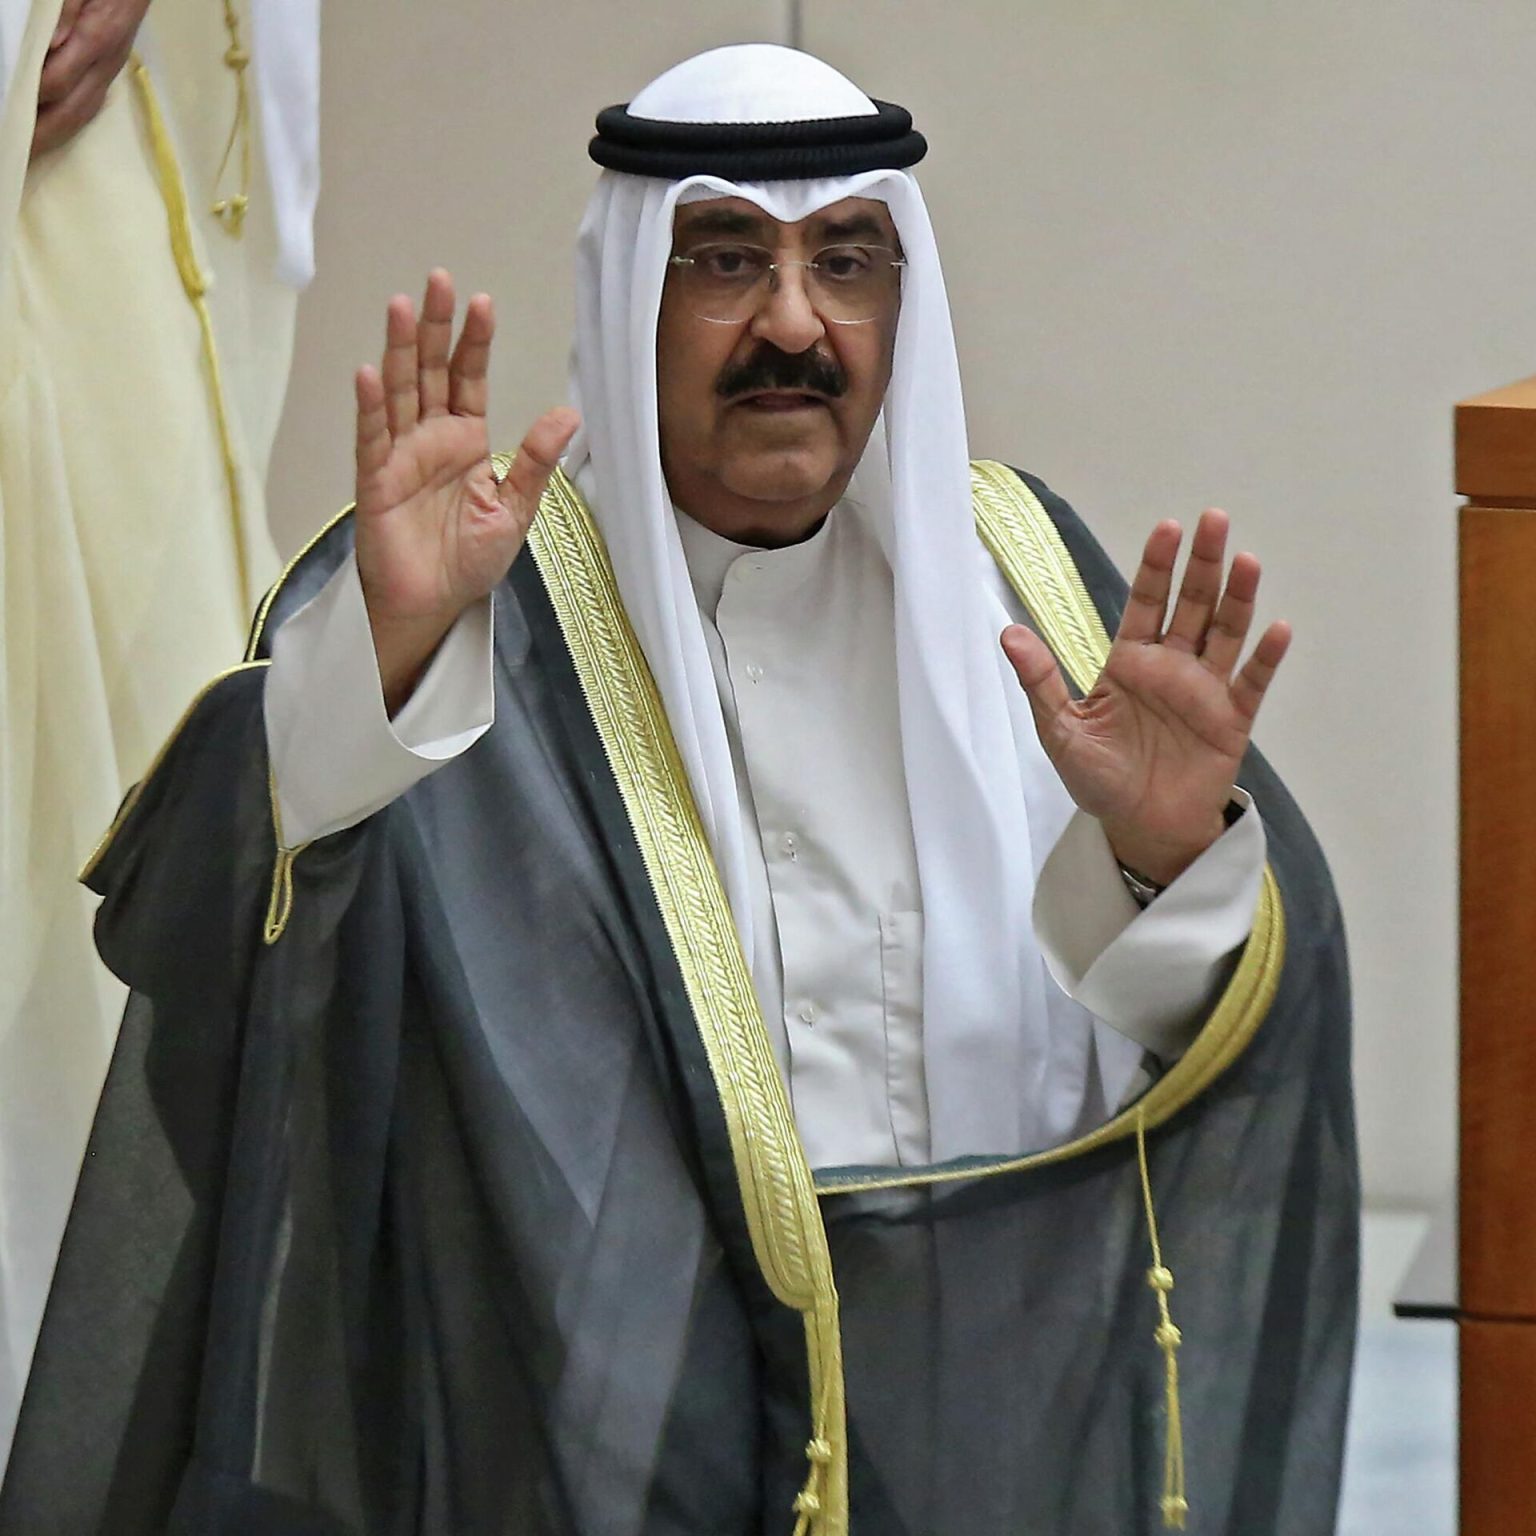 مجلس الوزراء الكويتي: ننادي بالشيخ مشعل الأحمد الجابر الصباح أميرا للكويت